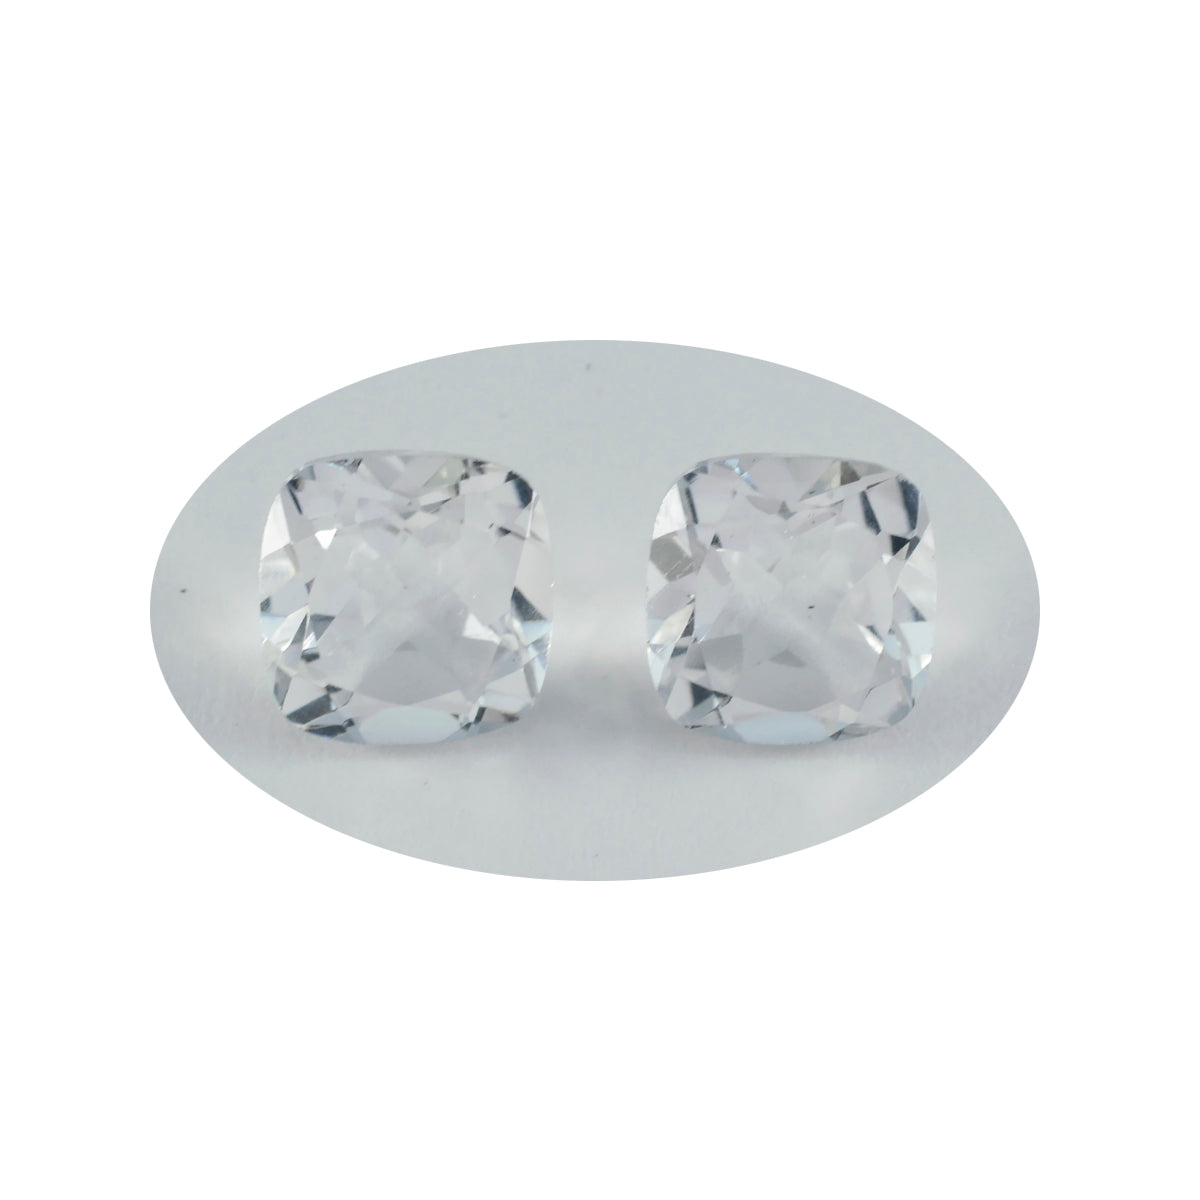 riyogems 1 pezzo di cristallo di quarzo bianco sfaccettato 11x11 mm a forma di cuscino, pietra preziosa sfusa di eccellente qualità